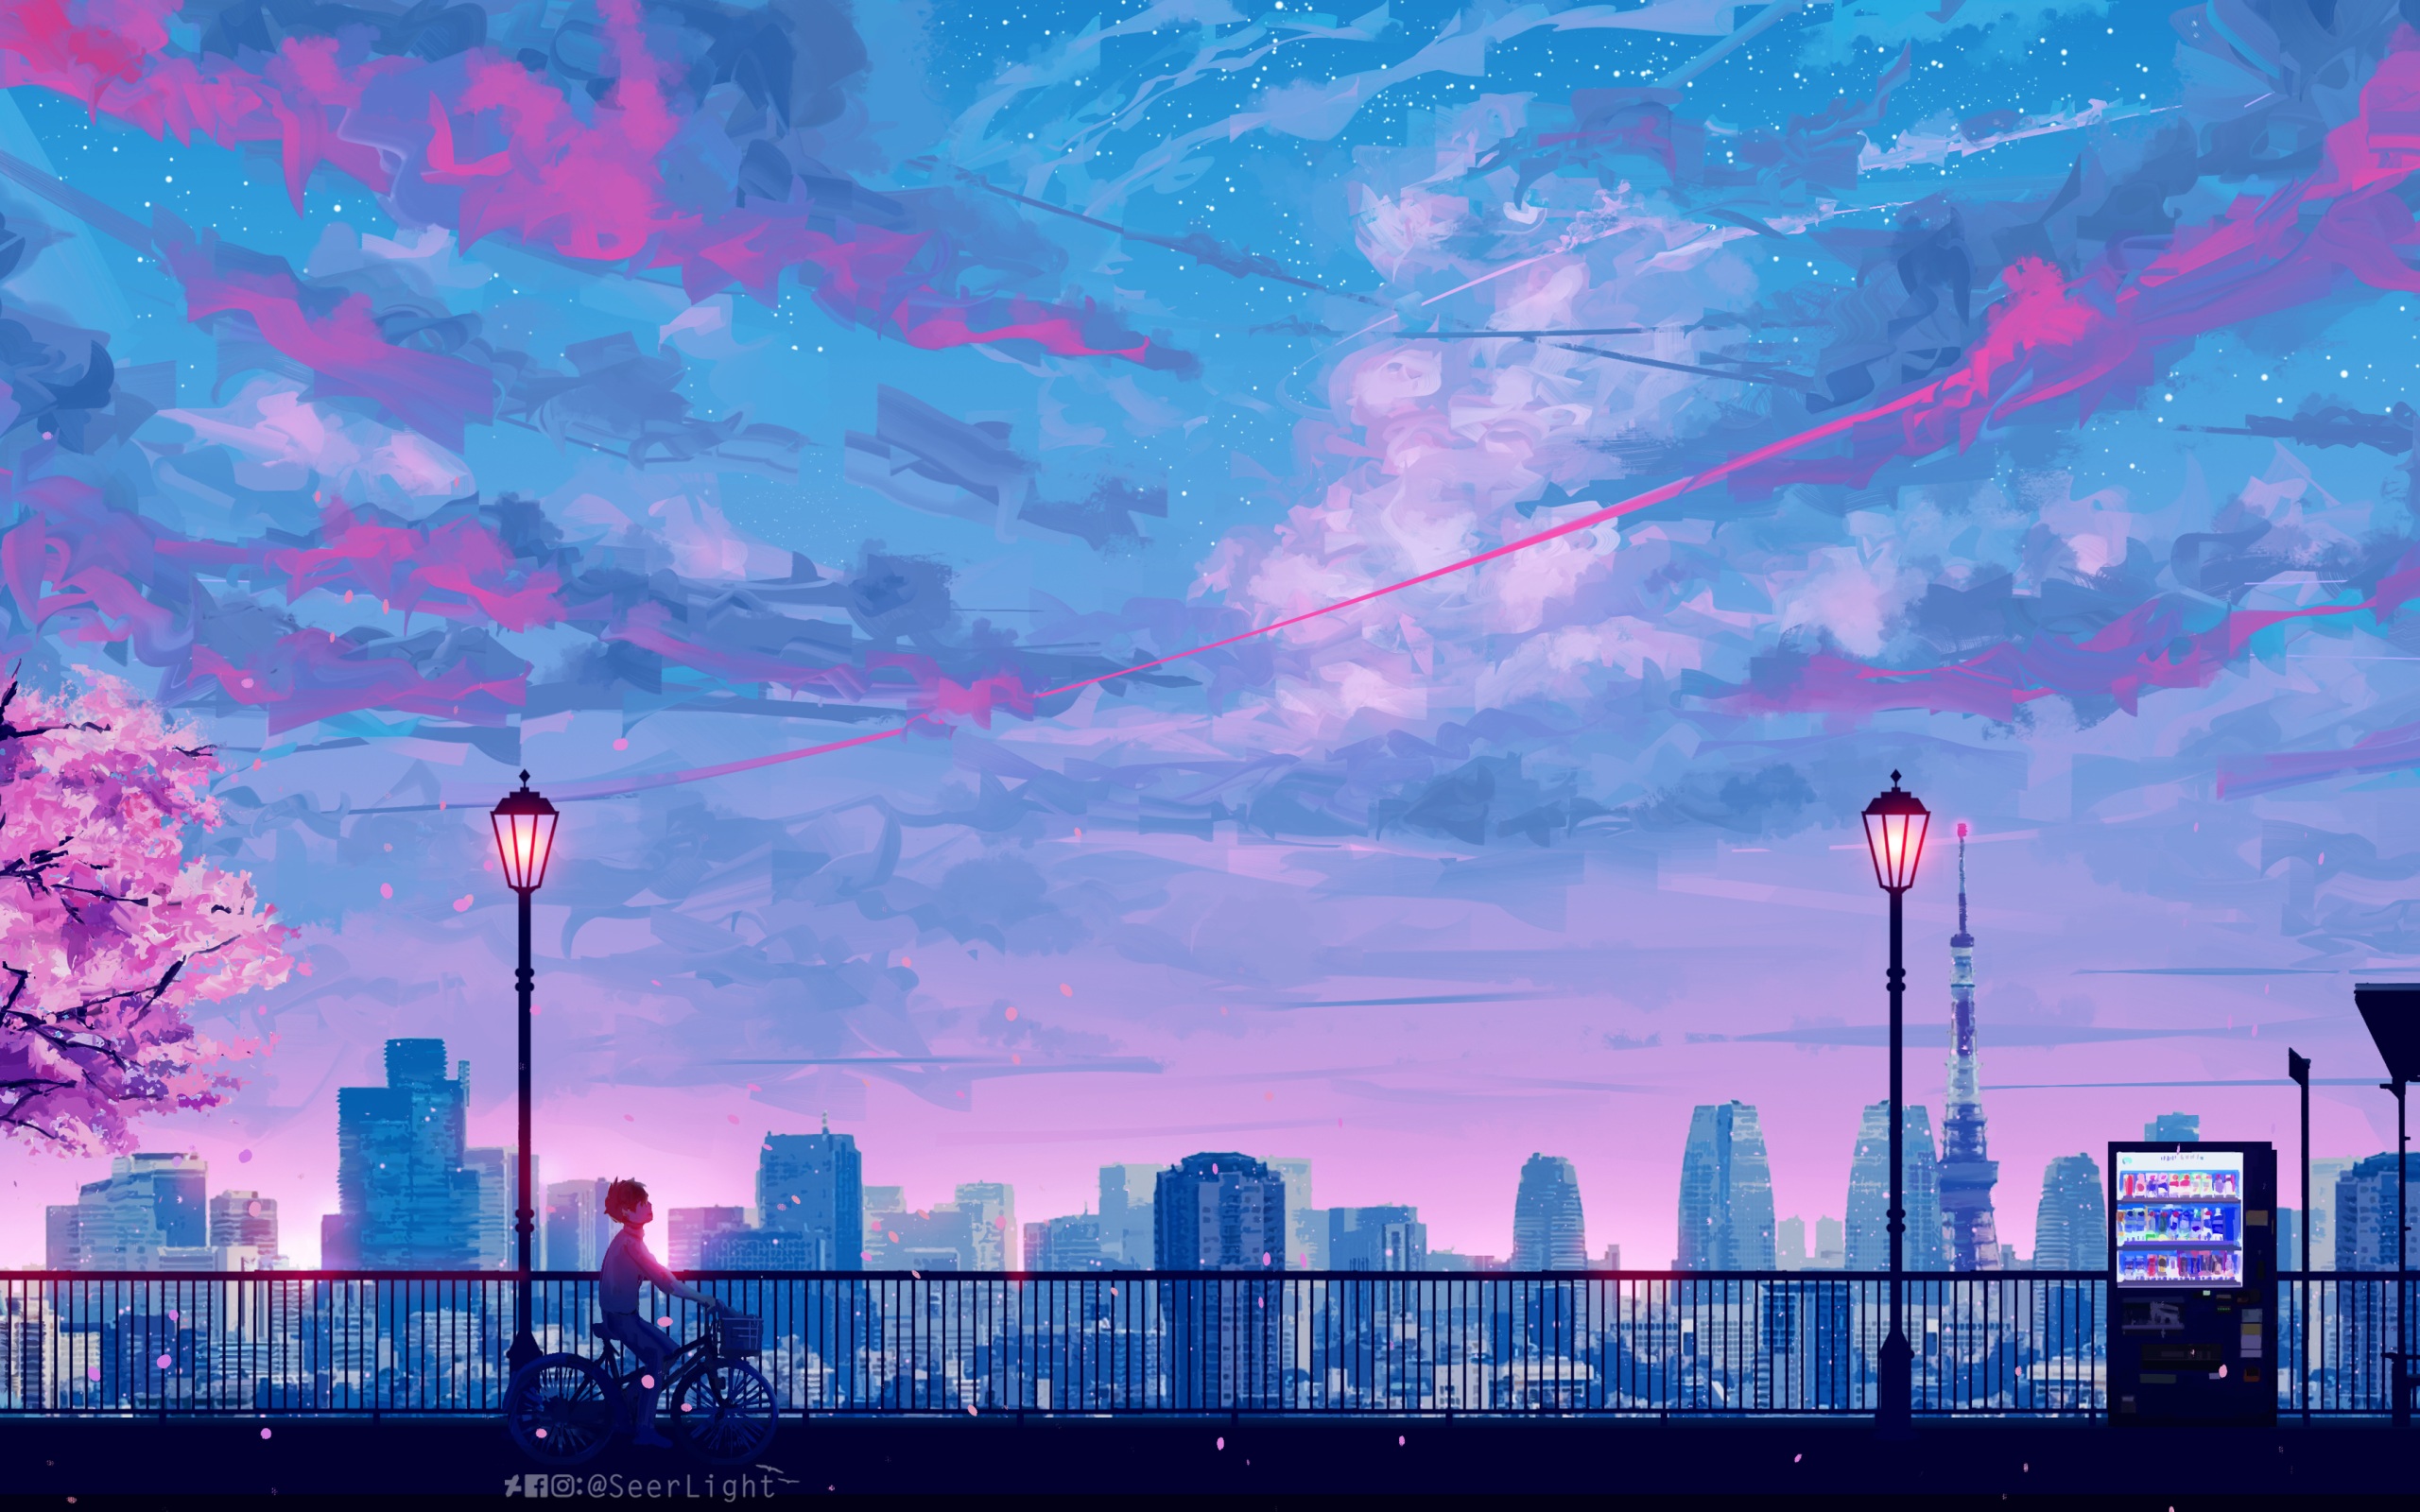 Nếu bạn là một fan hâm mộ của Anime và cảm thấy bị nhàm chán với hình nền hiện tại của mình, hãy thử một bức ảnh mới với hình nền Anime phong cảnh đô thị 4K. Với độ phân giải cao và màu sắc sáng tạo, hình nền này sẽ mang đến cho bạn một không gian ảo tuyệt vời mỗi khi sử dụng máy tính.